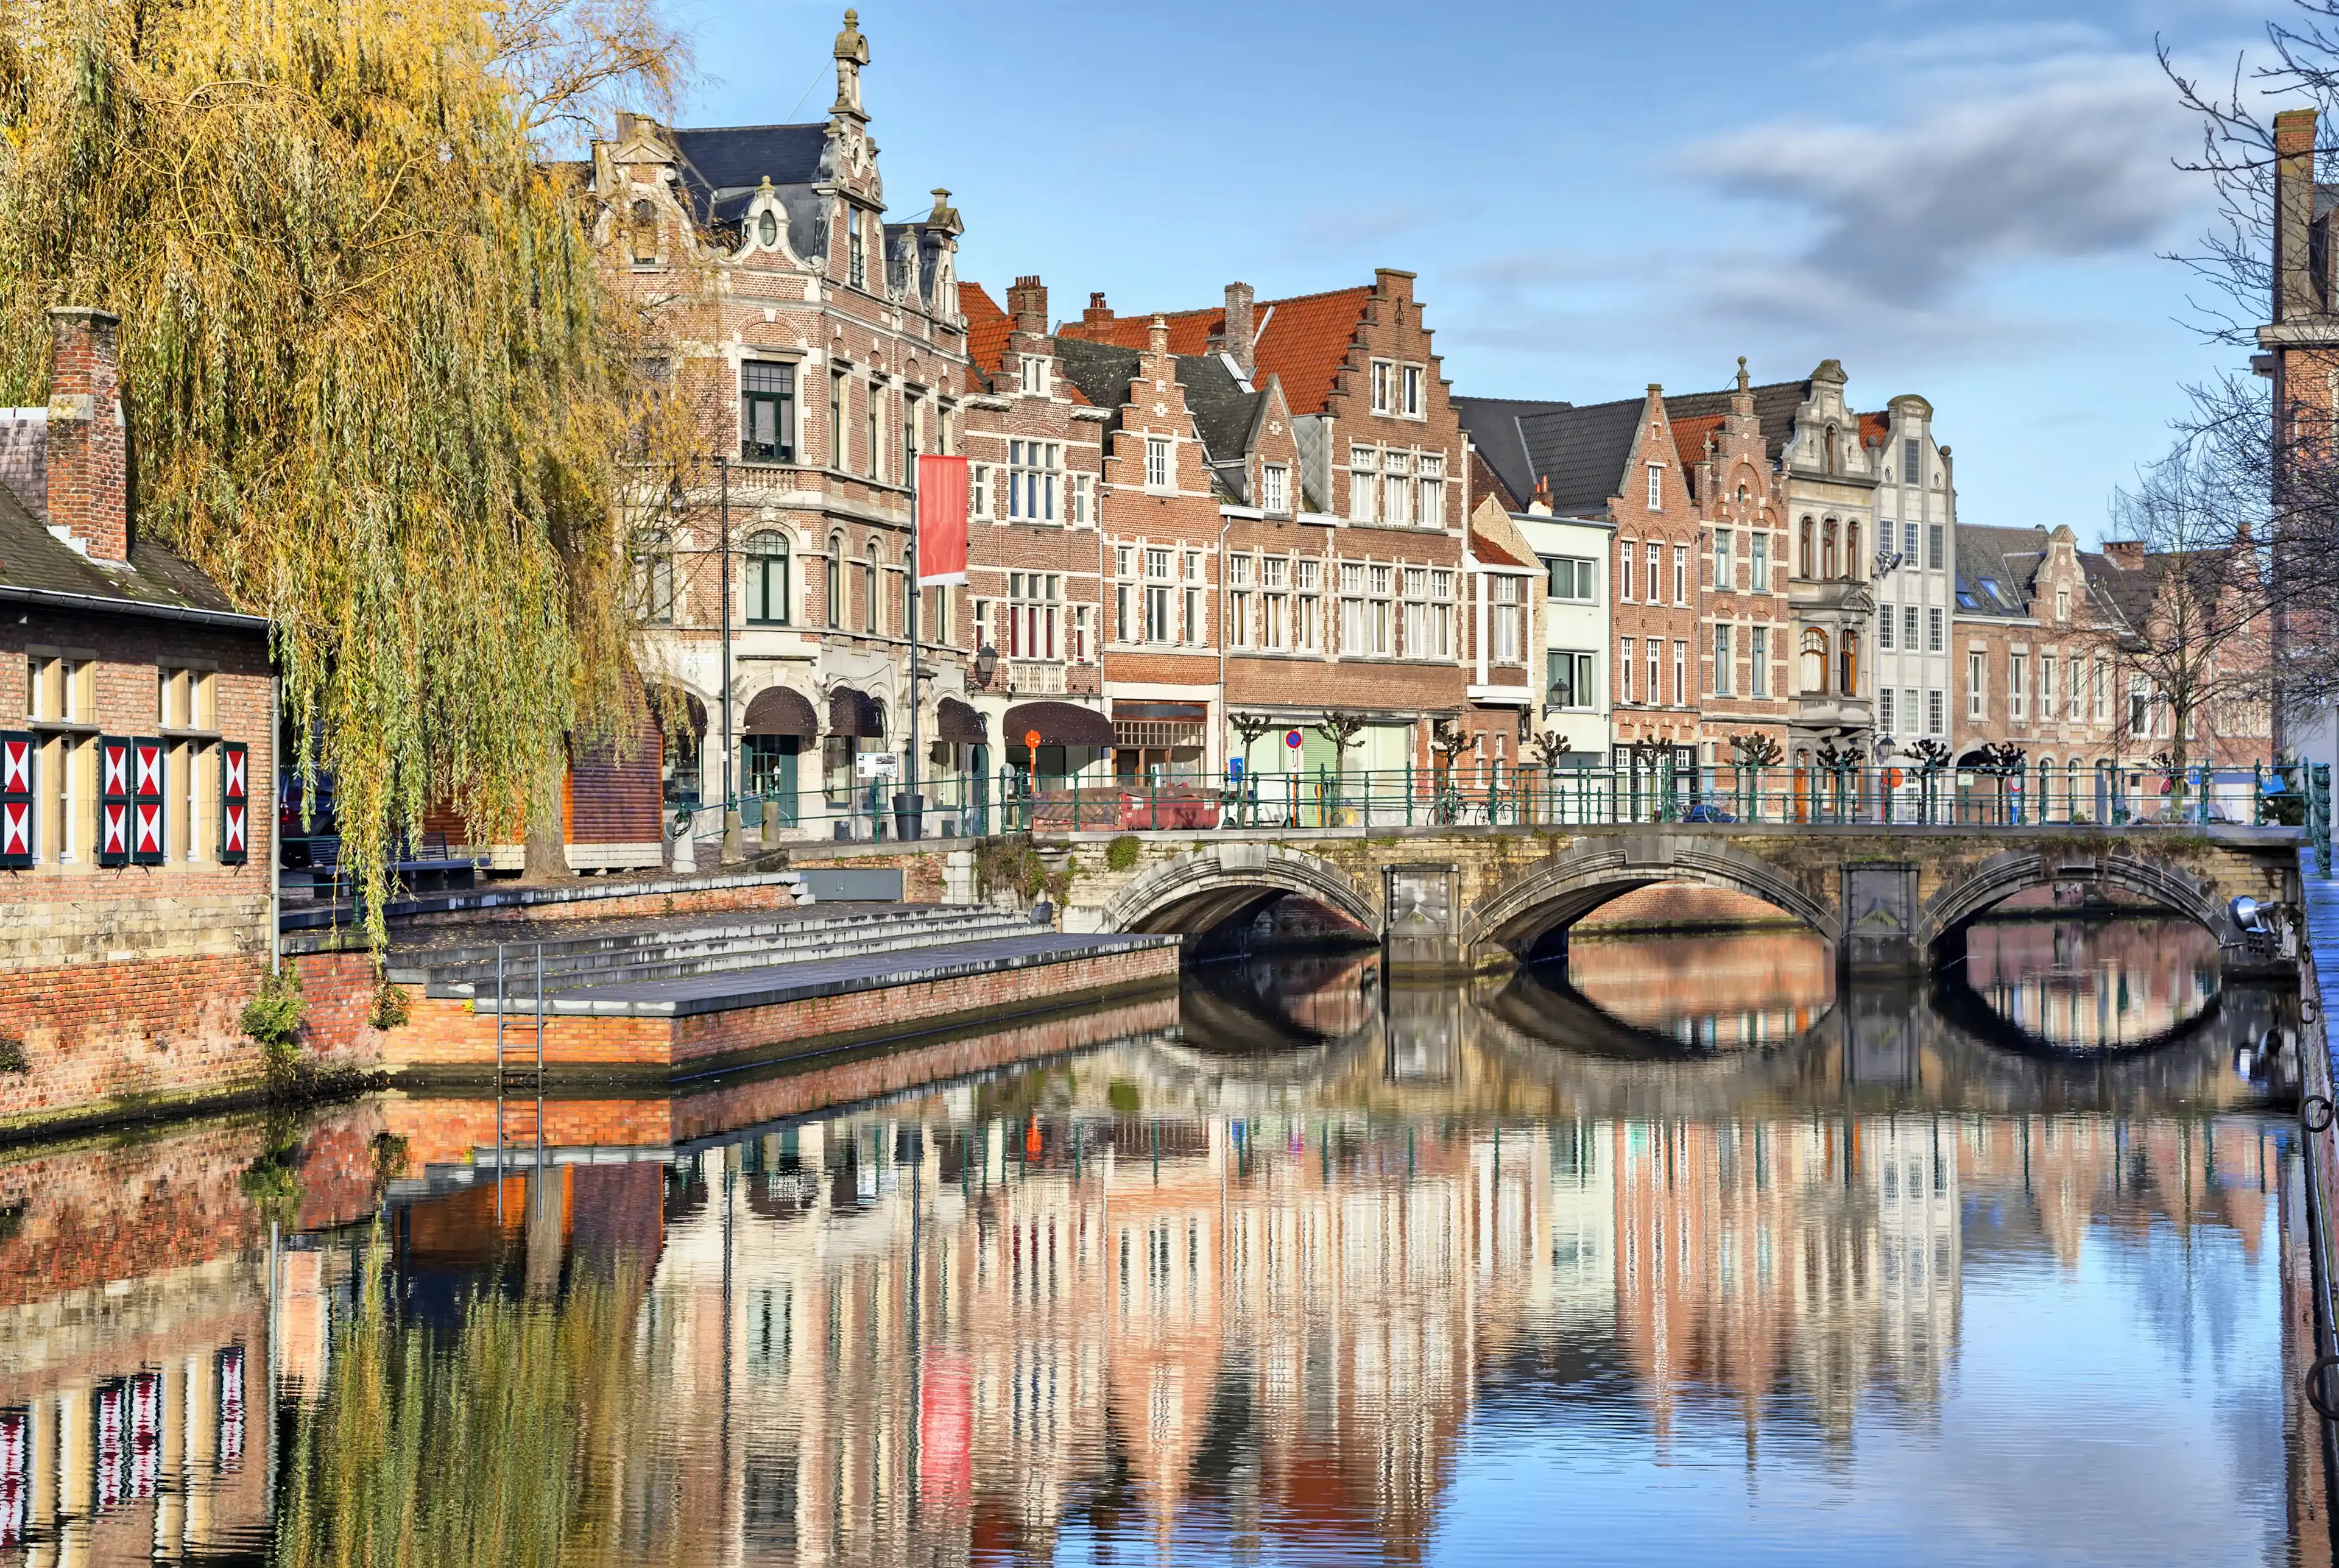 Old buildings, canal and bridge in Lier, Flanders, Belgium